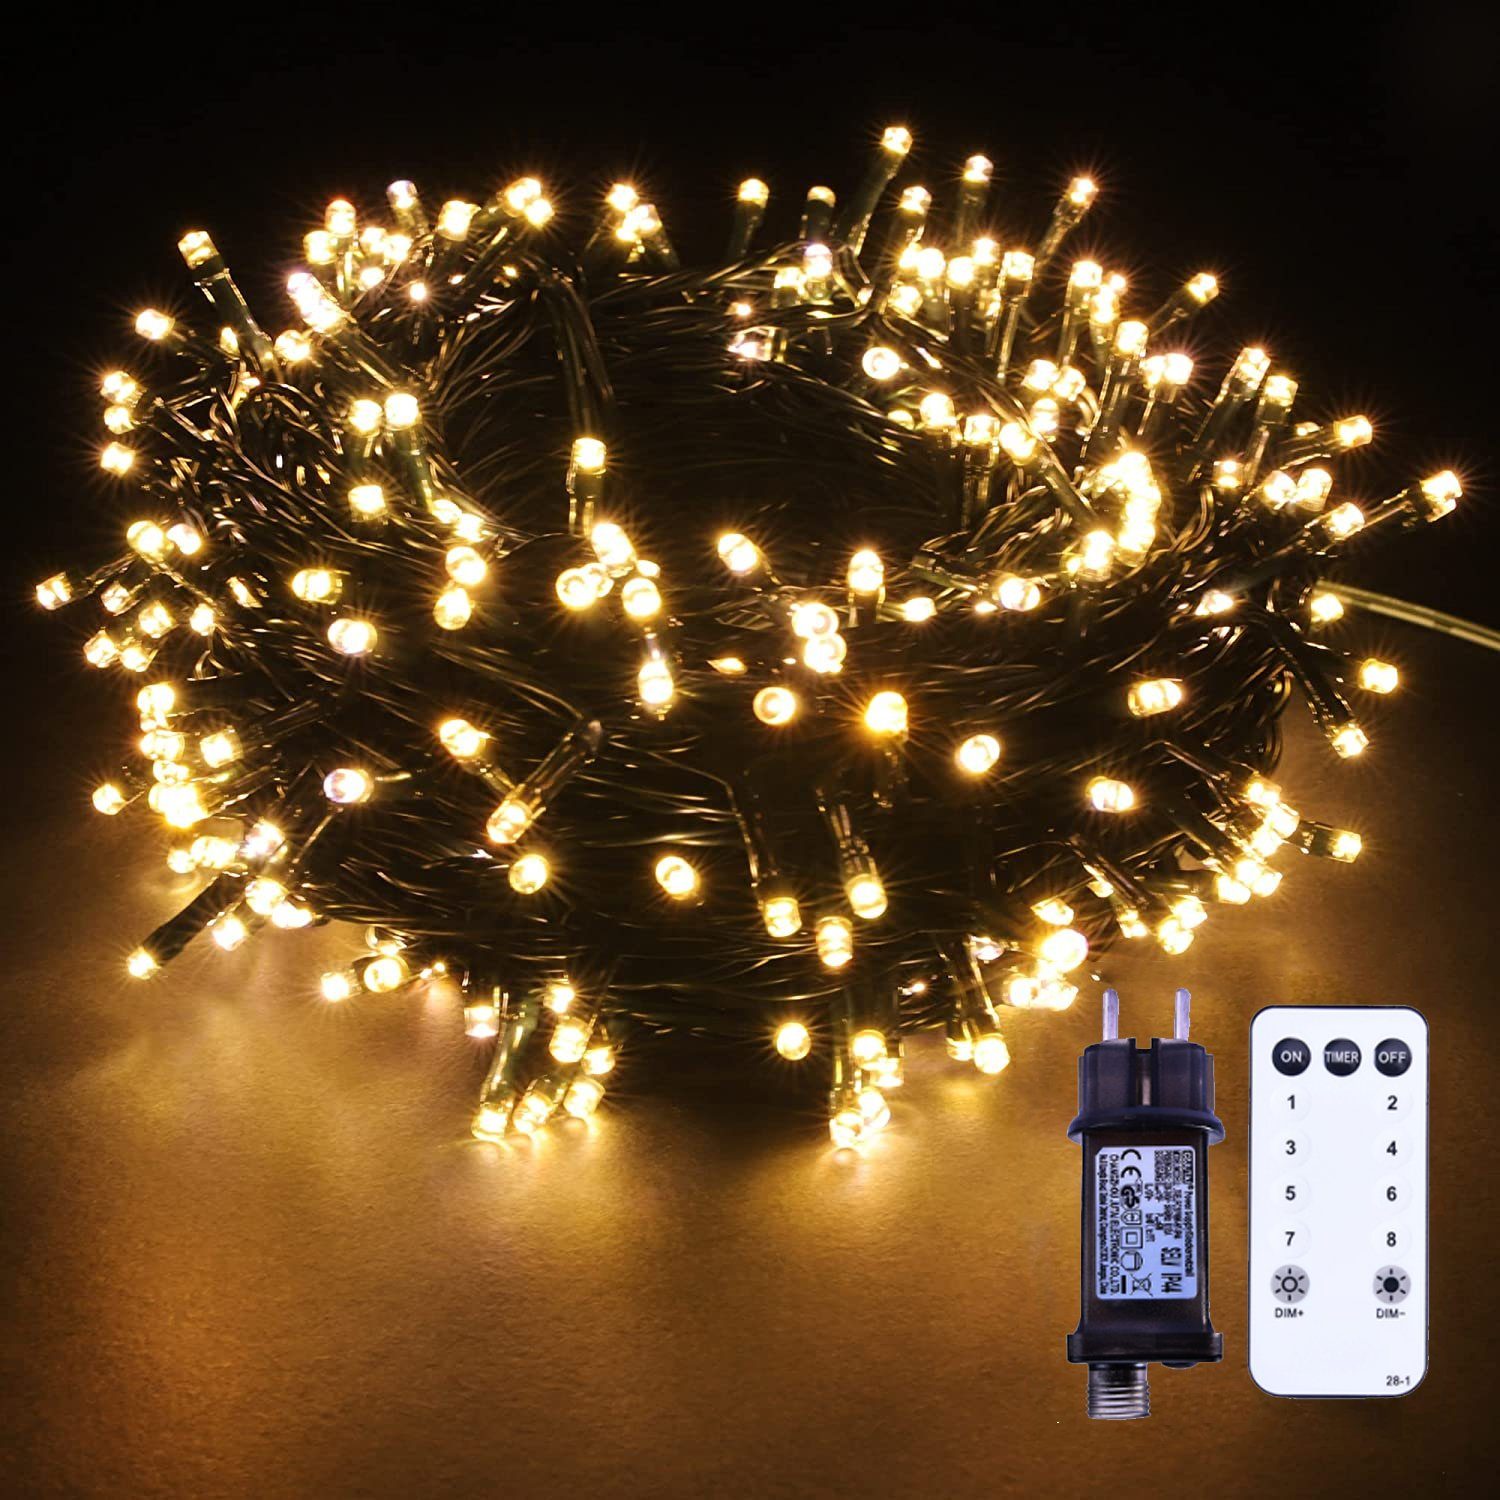 mit Dekoobjekt Dimmbar 20m Warmweiß Cluster 31V, LED LED Weihnachtsbaum Fernbedienung, Lichterkette Büschelkette Garten Timer Außen Büschel-Lichterkette 8Modi Gartenbeleuchtung, Warmweiß, XERSEK